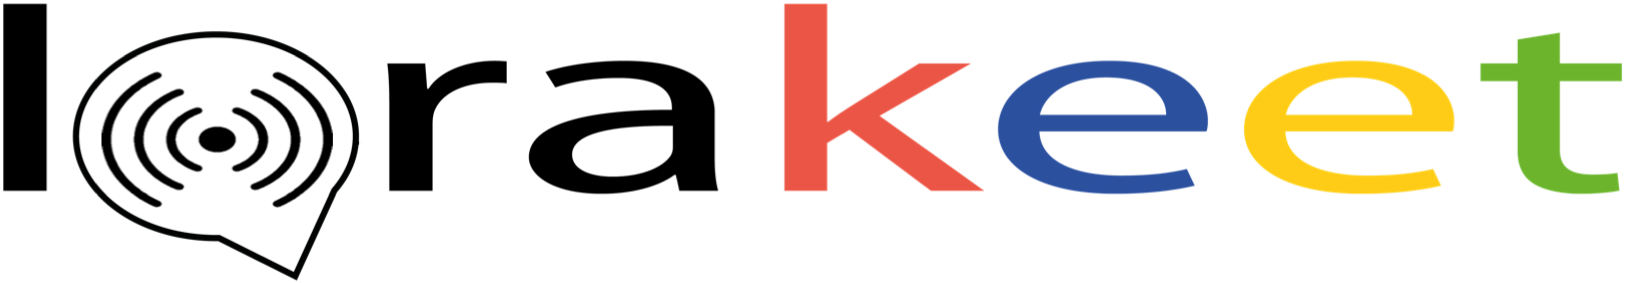 Lorakeet_Logo